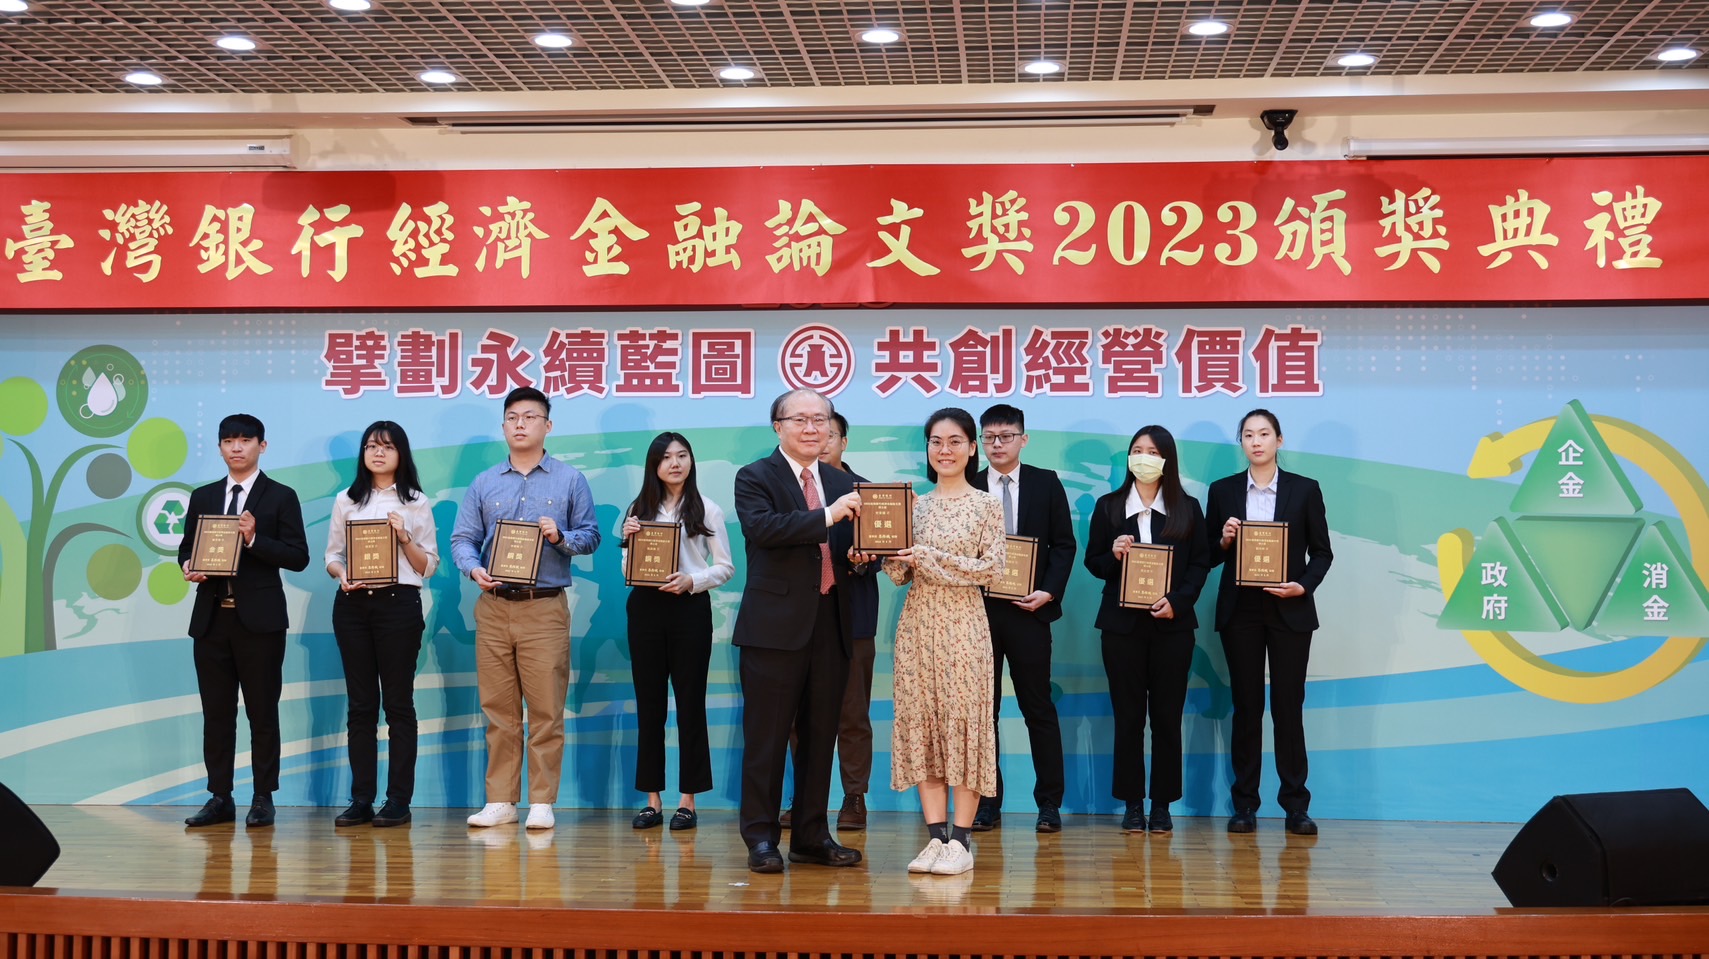 2022台湾银行经济金融论文奖-史家緁获奖照1